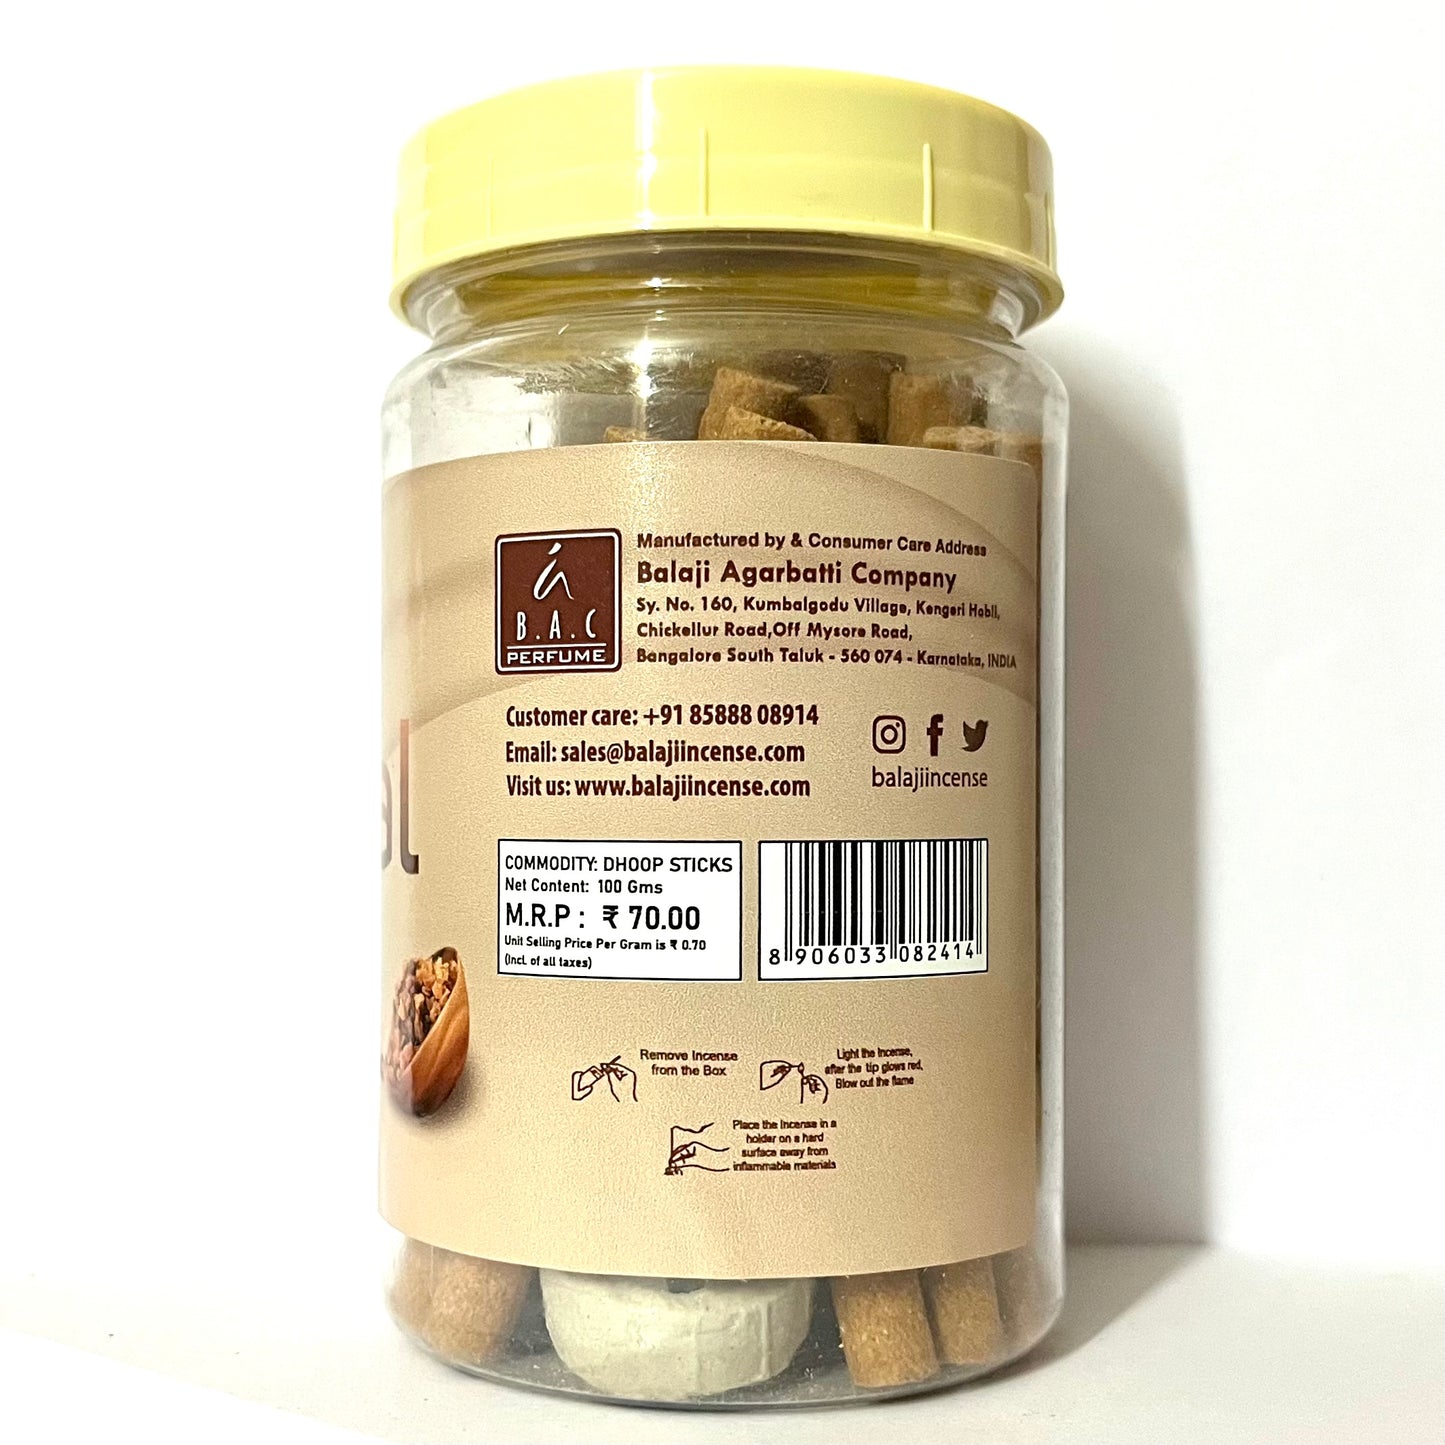 Balaji GUGGAL Premium Dhoop Sticks Jar (100 gms)